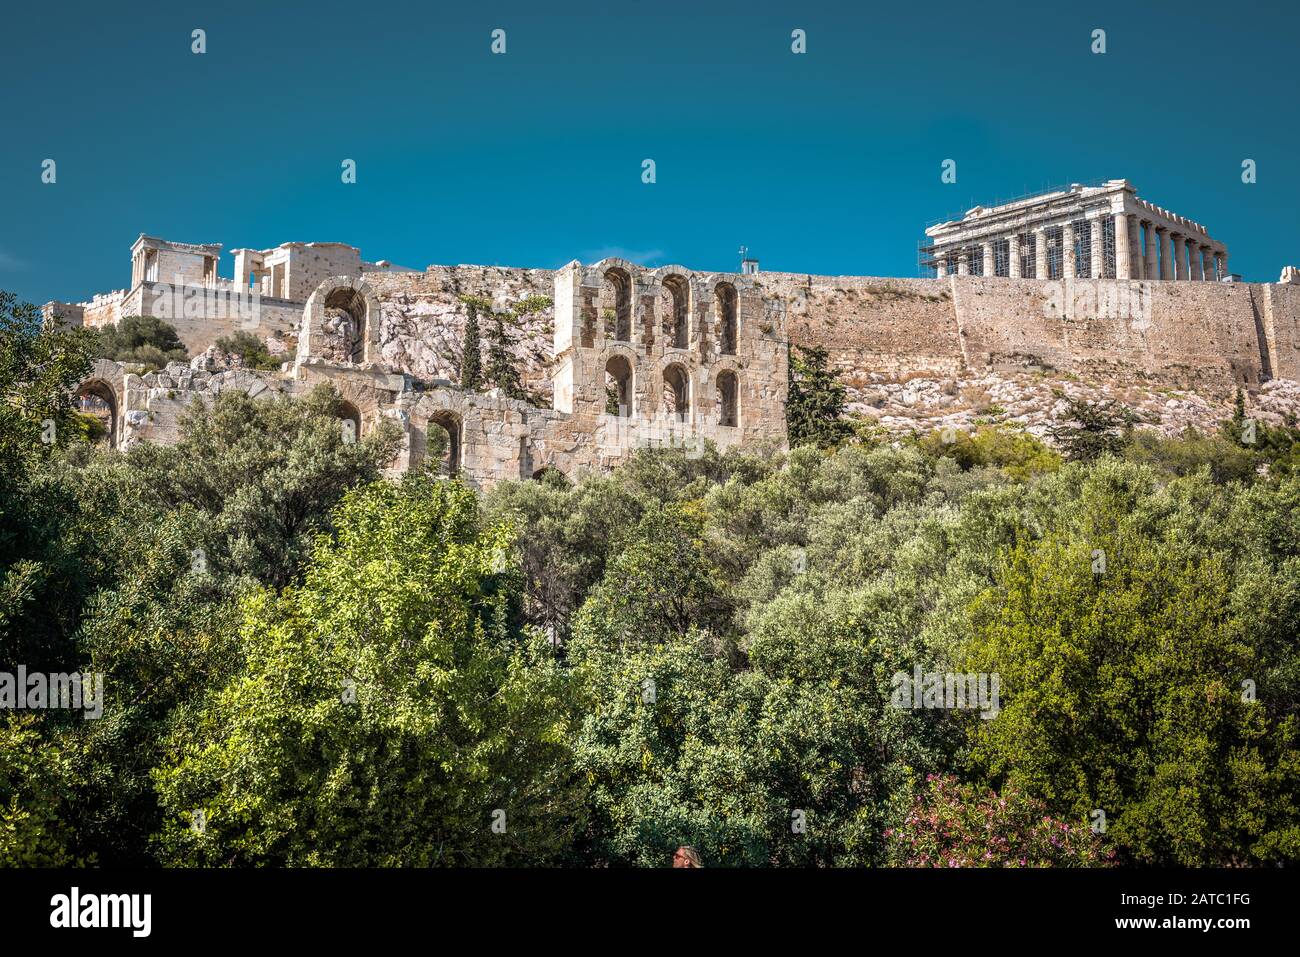 Akropolis von Athen, Griechenland. Es ist das Wahrzeichen von Athen. Malerische Panorama auf die Akropolis Hügel mit der alten griechischen Ruinen im Zentrum Athens. Berühmte hi Stockfoto